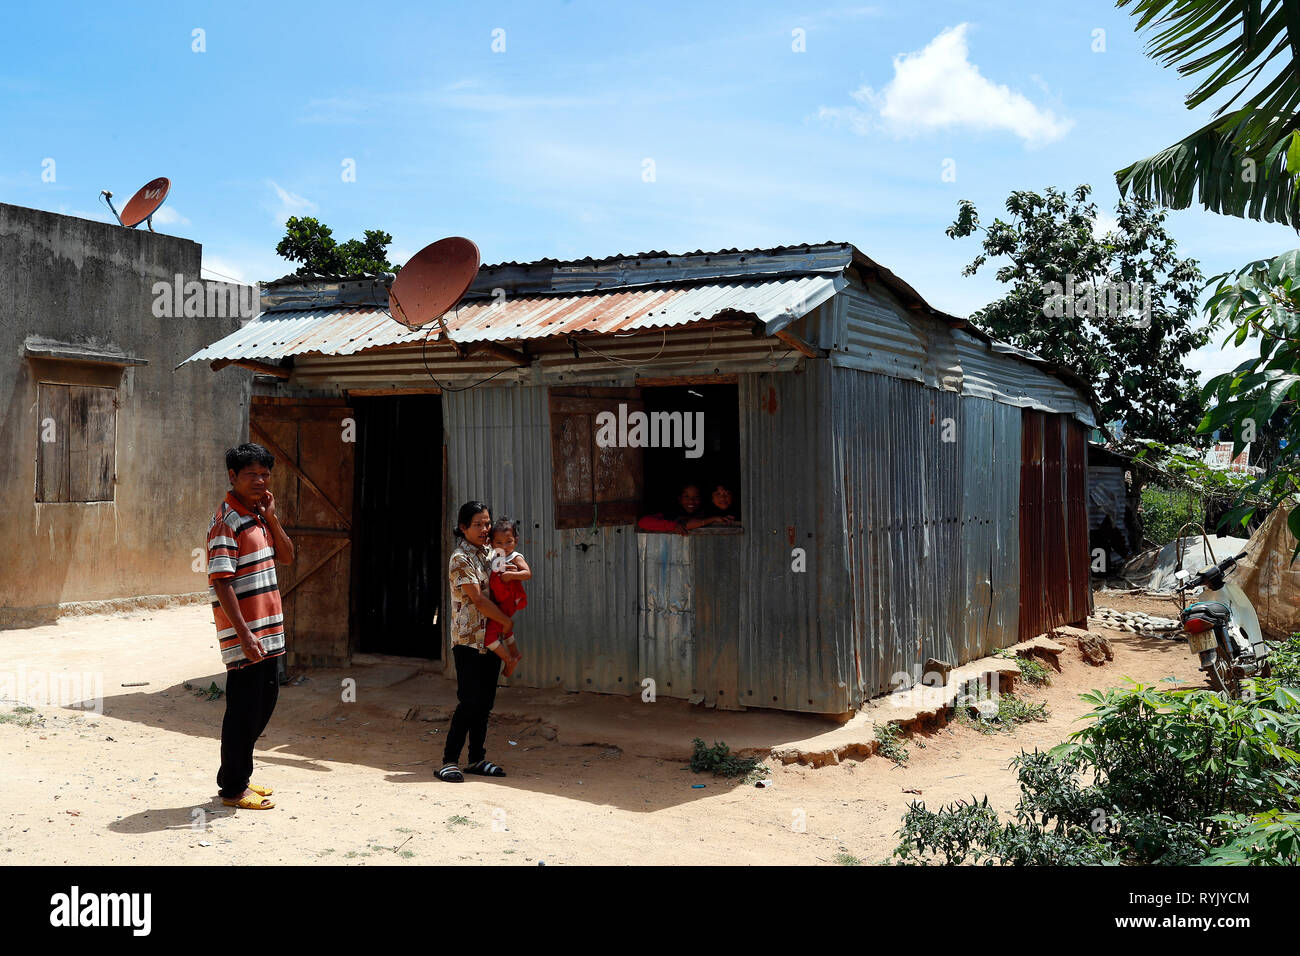 Famille vietnamiennes pauvres vivant dans un petit baraquement se compose de ferraille. Dalat. Le Vietnam. Banque D'Images